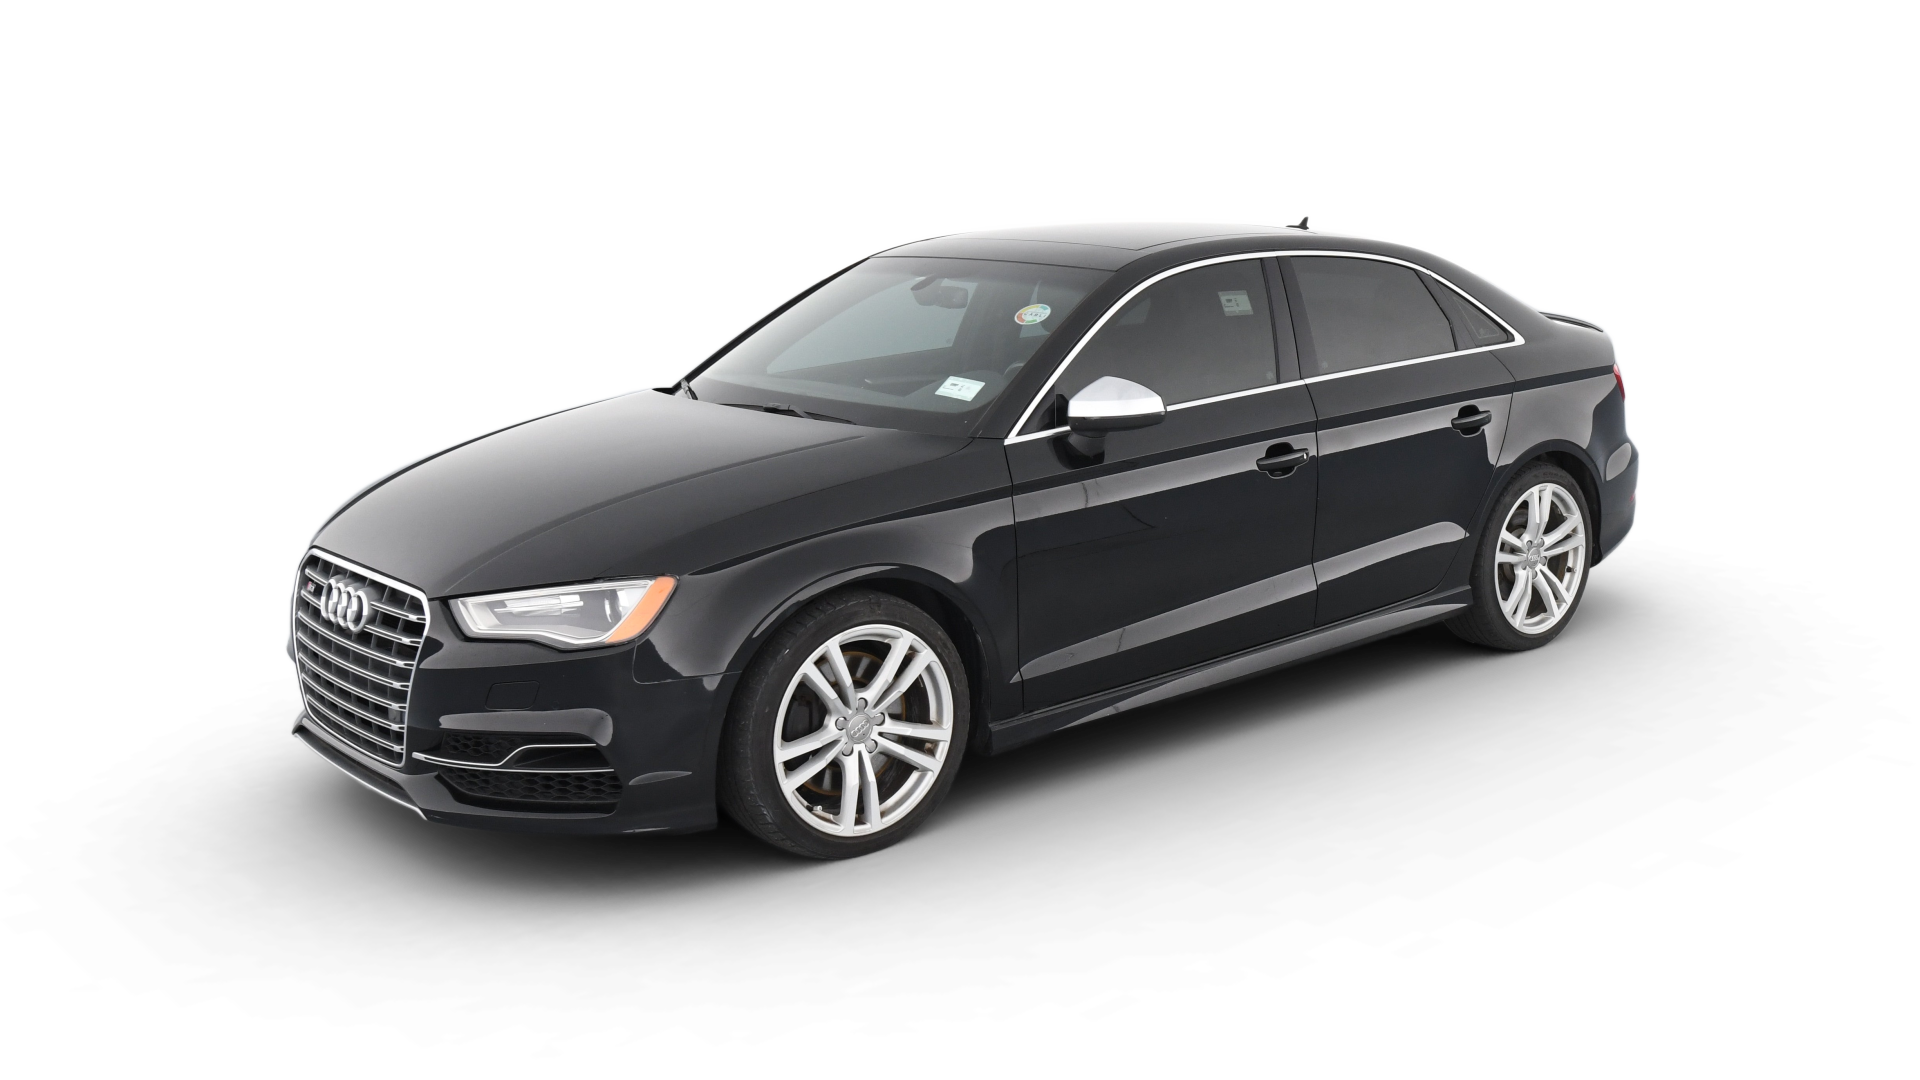 Audi S3 model image.